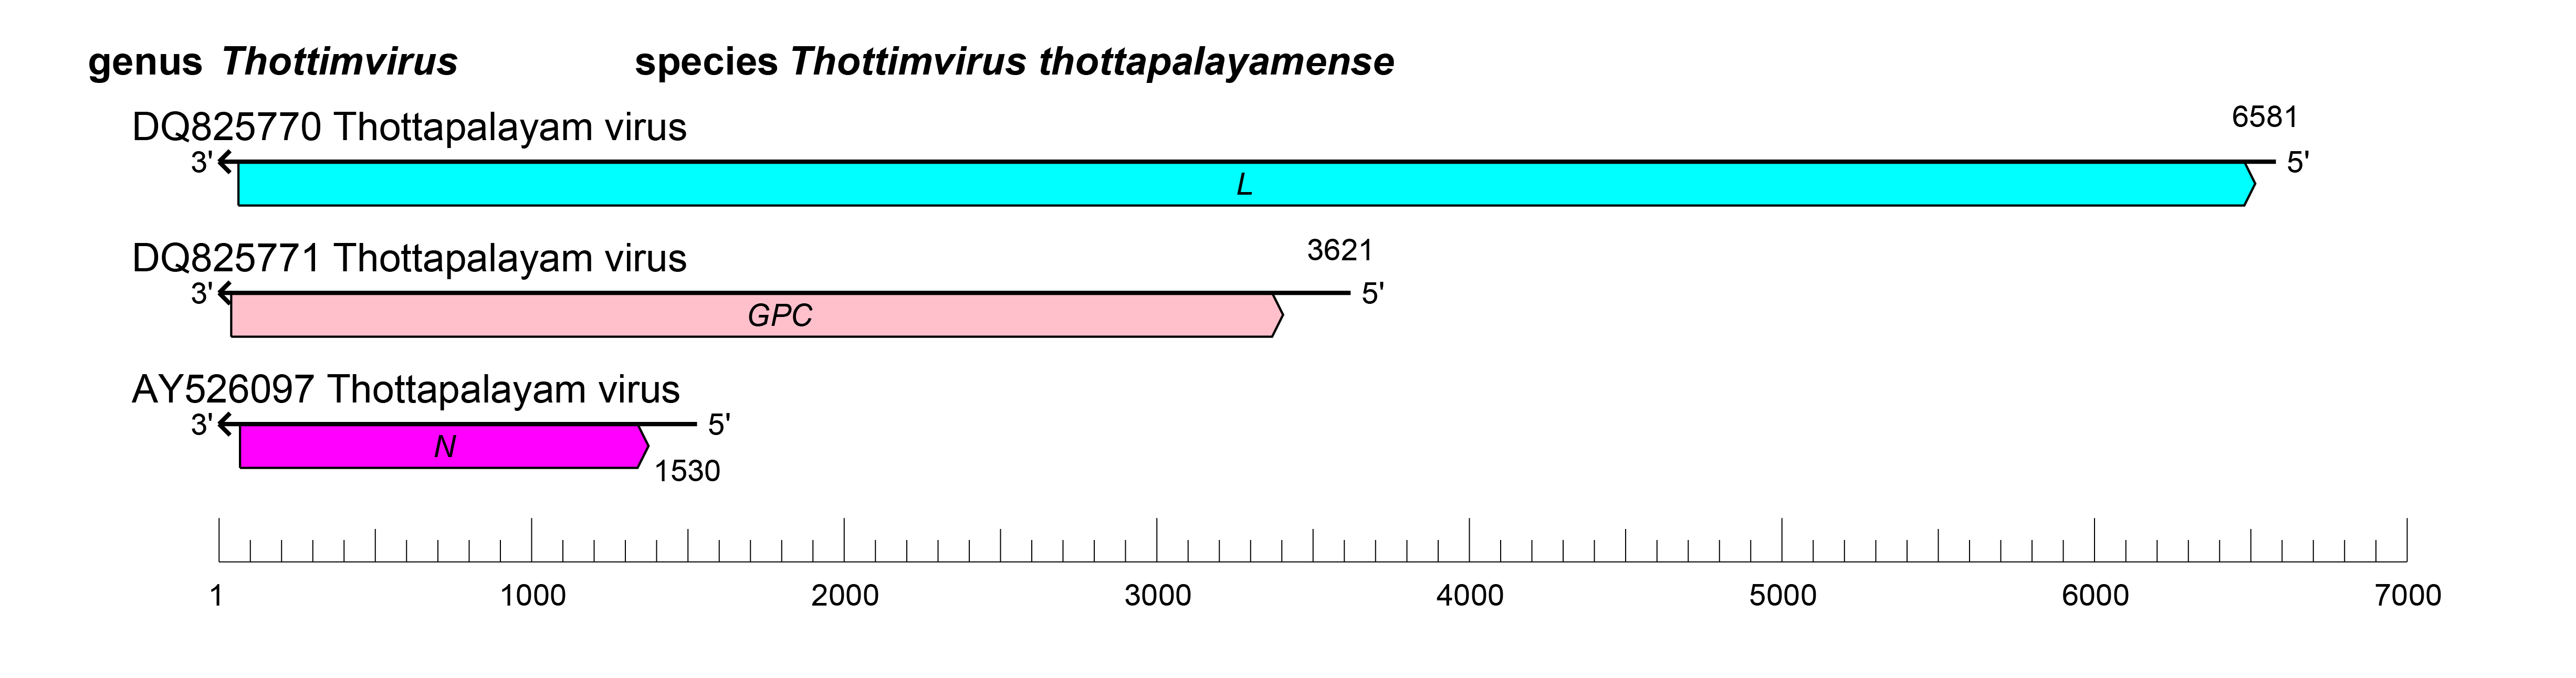 Thottimvirus genome